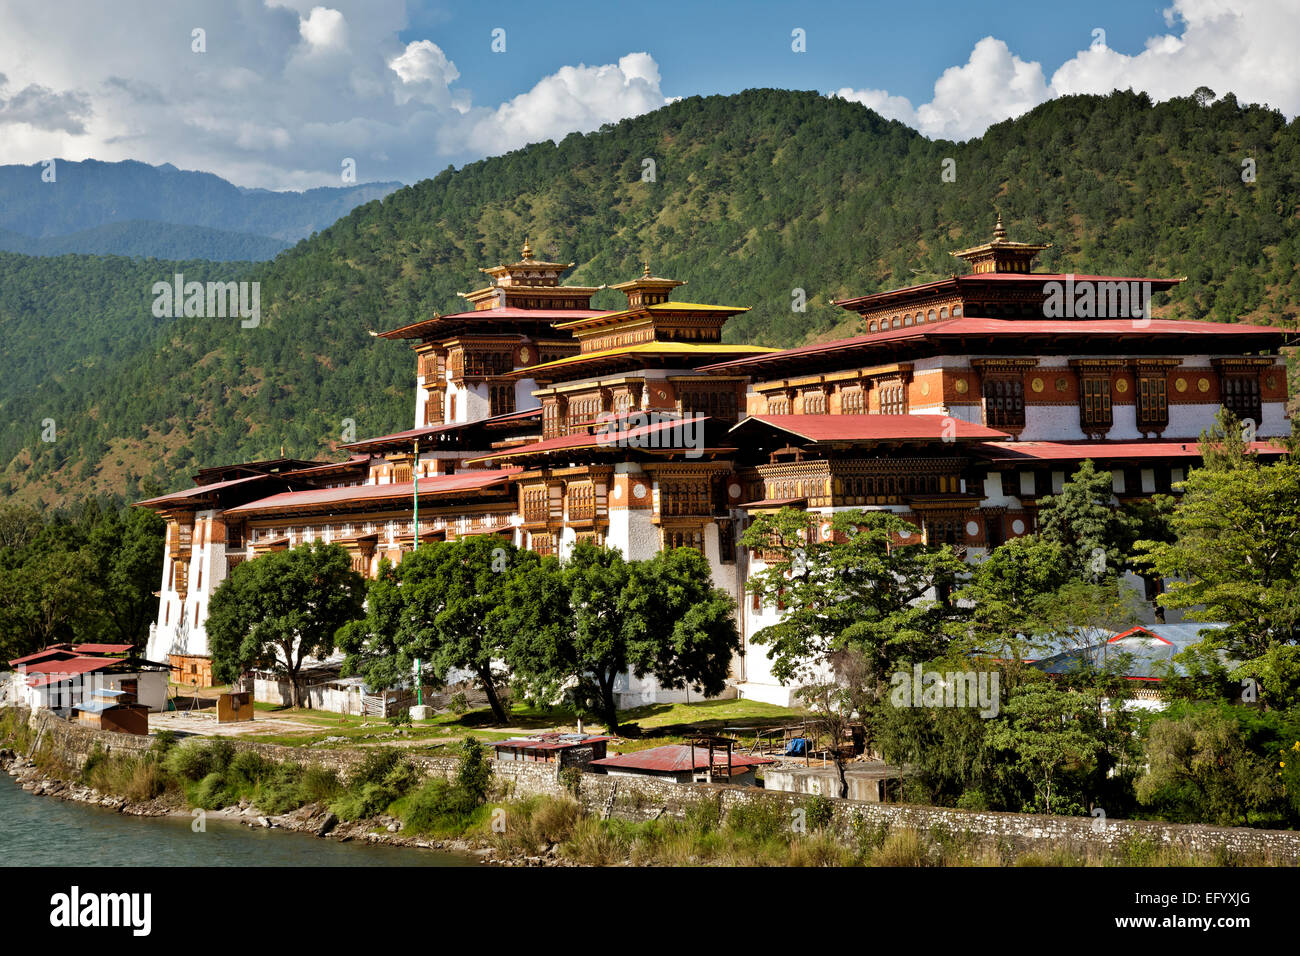 Bhoutan - Punakha Dzong (monastère) et les bureaux du gouvernement, a été la capitale et siège du gouvernement jusqu'au milieu des années 50. Banque D'Images